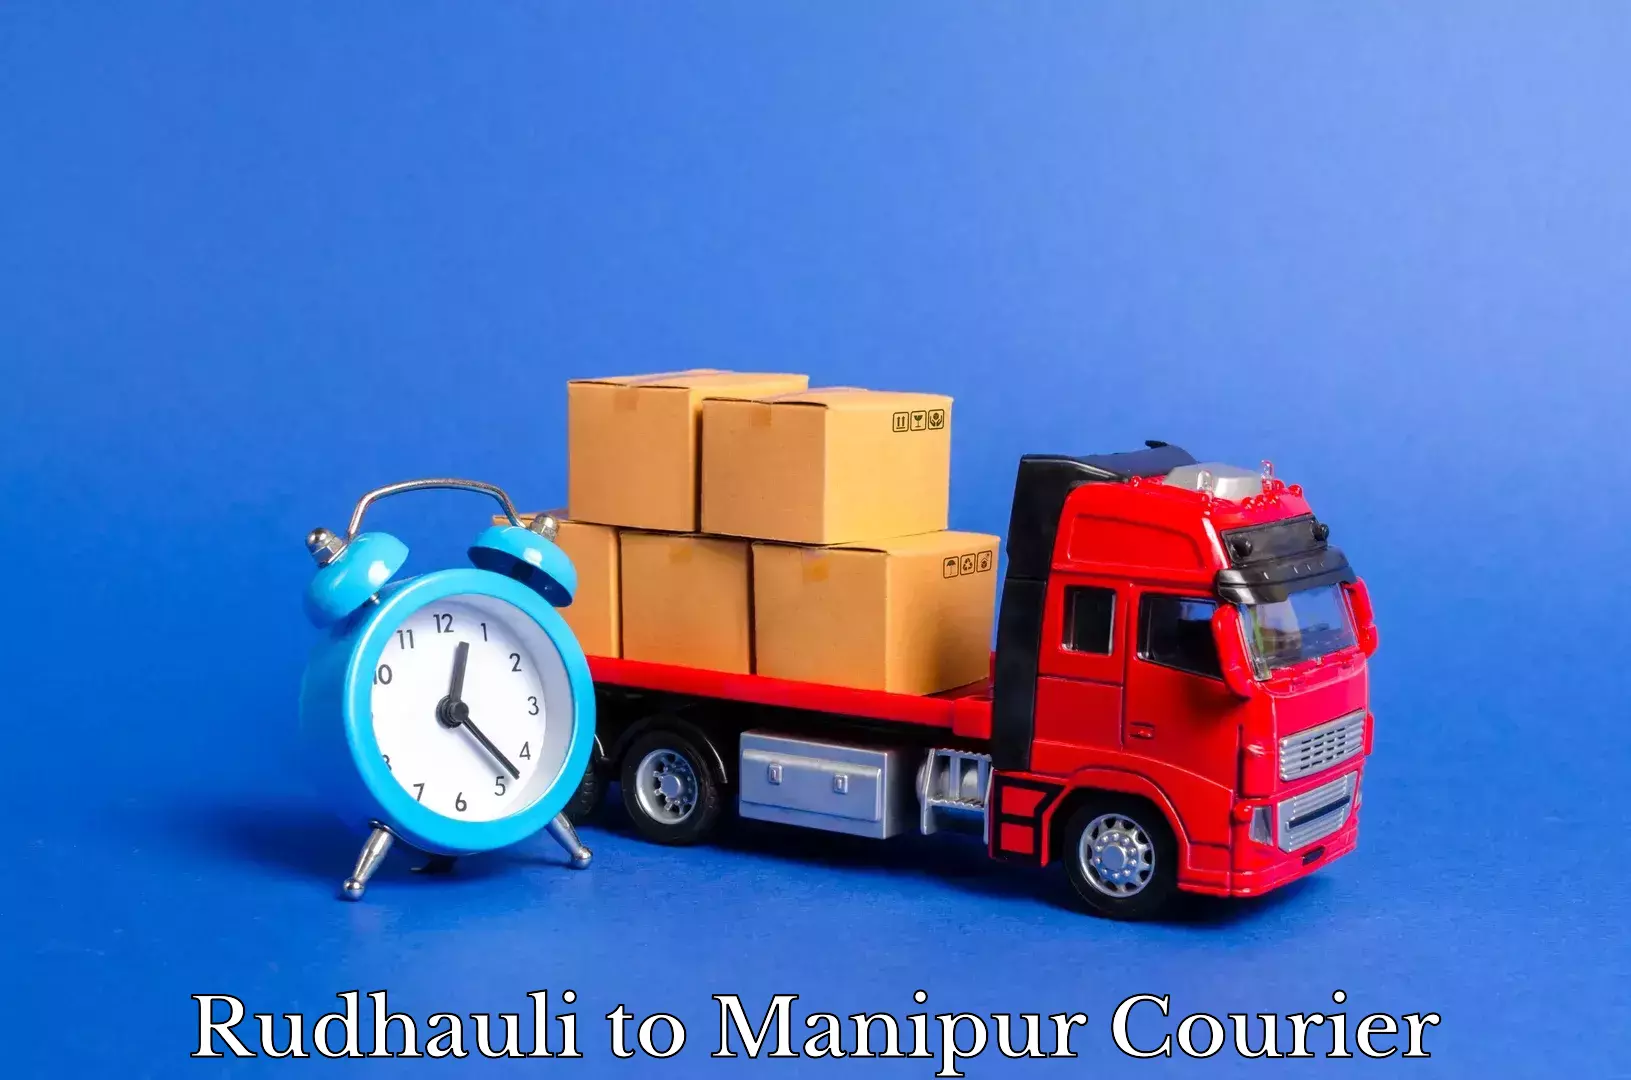 Furniture moving experts Rudhauli to Manipur